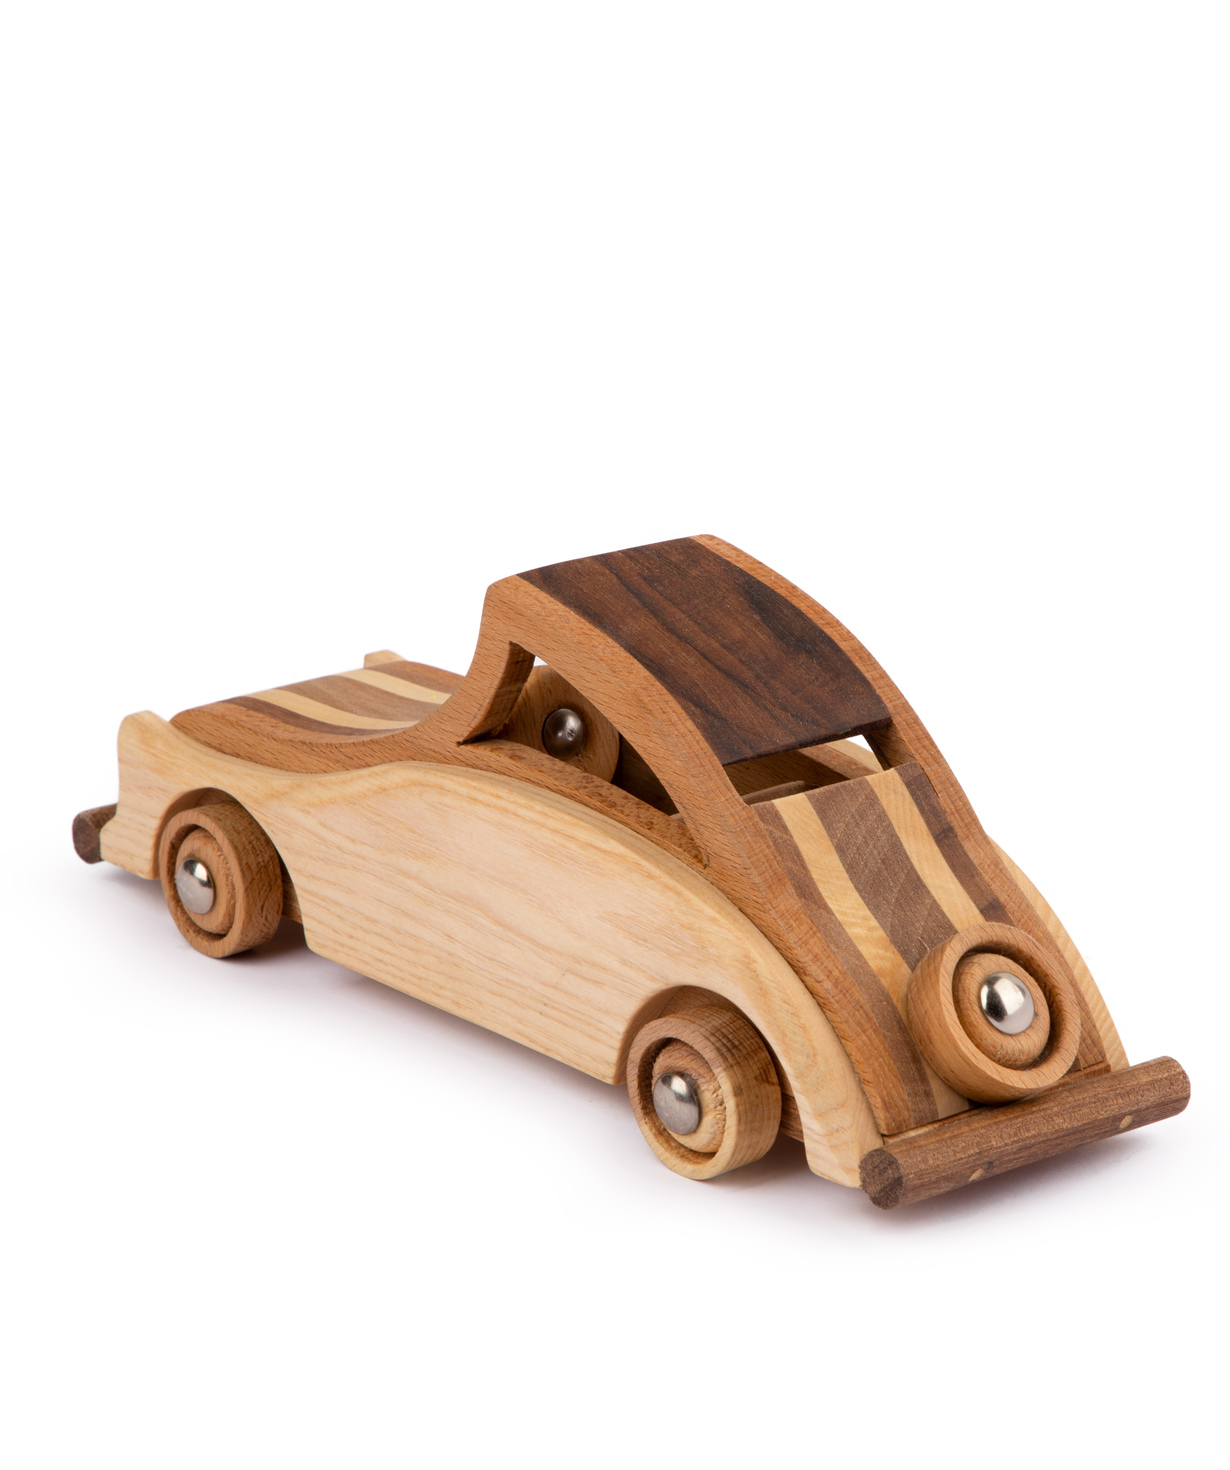 Խաղալիք «Im wooden toys» փայտից, ռետրո մեքենա